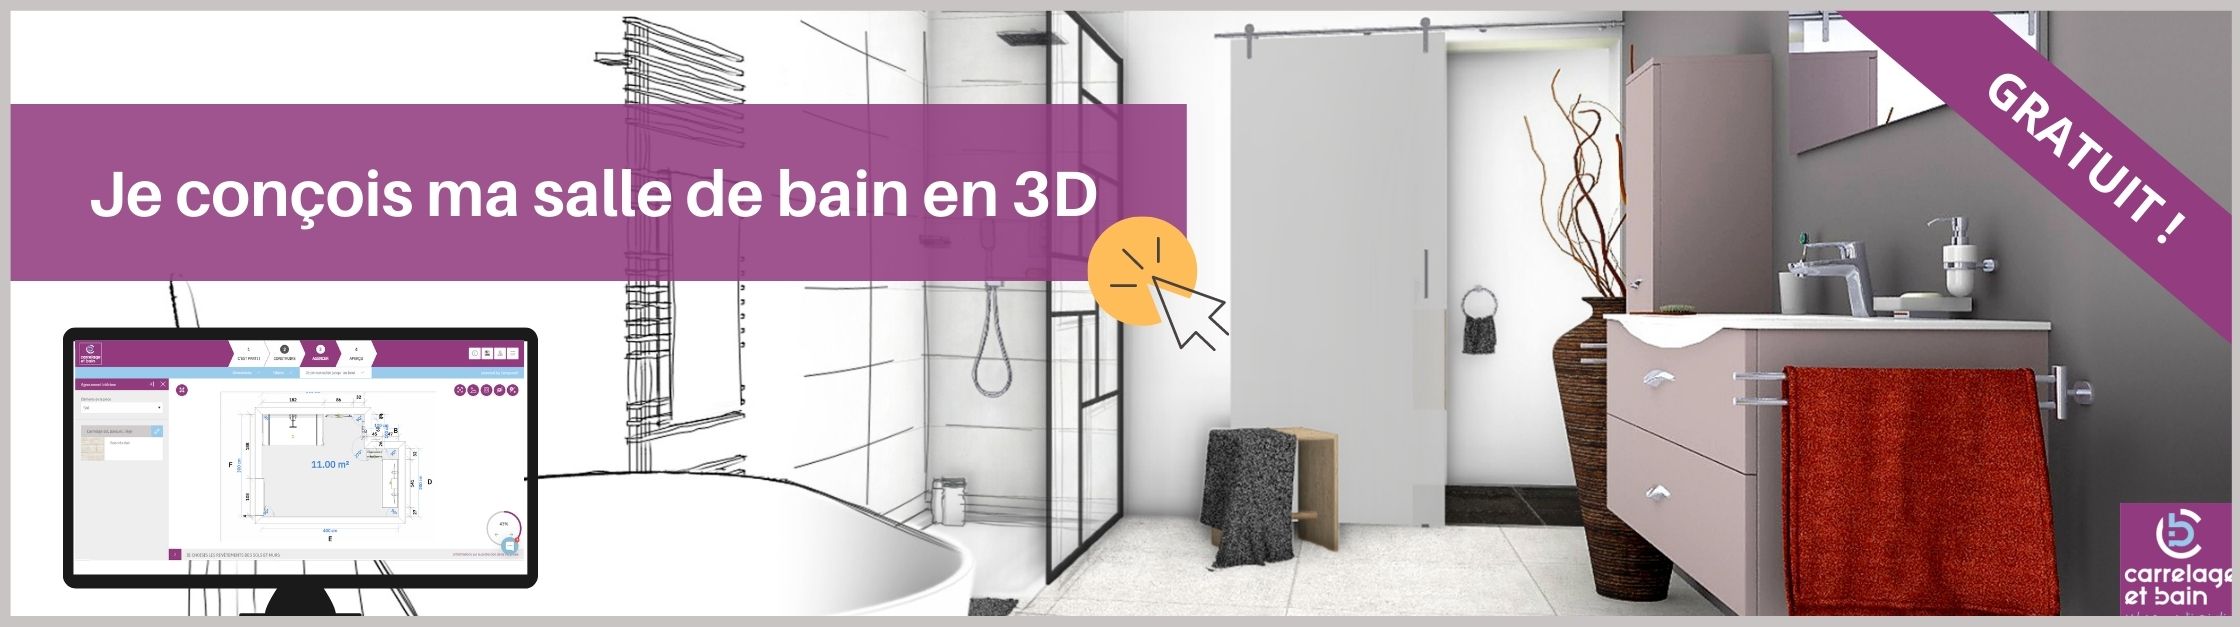 Configurez votre salle de bain avec notre outil 3D